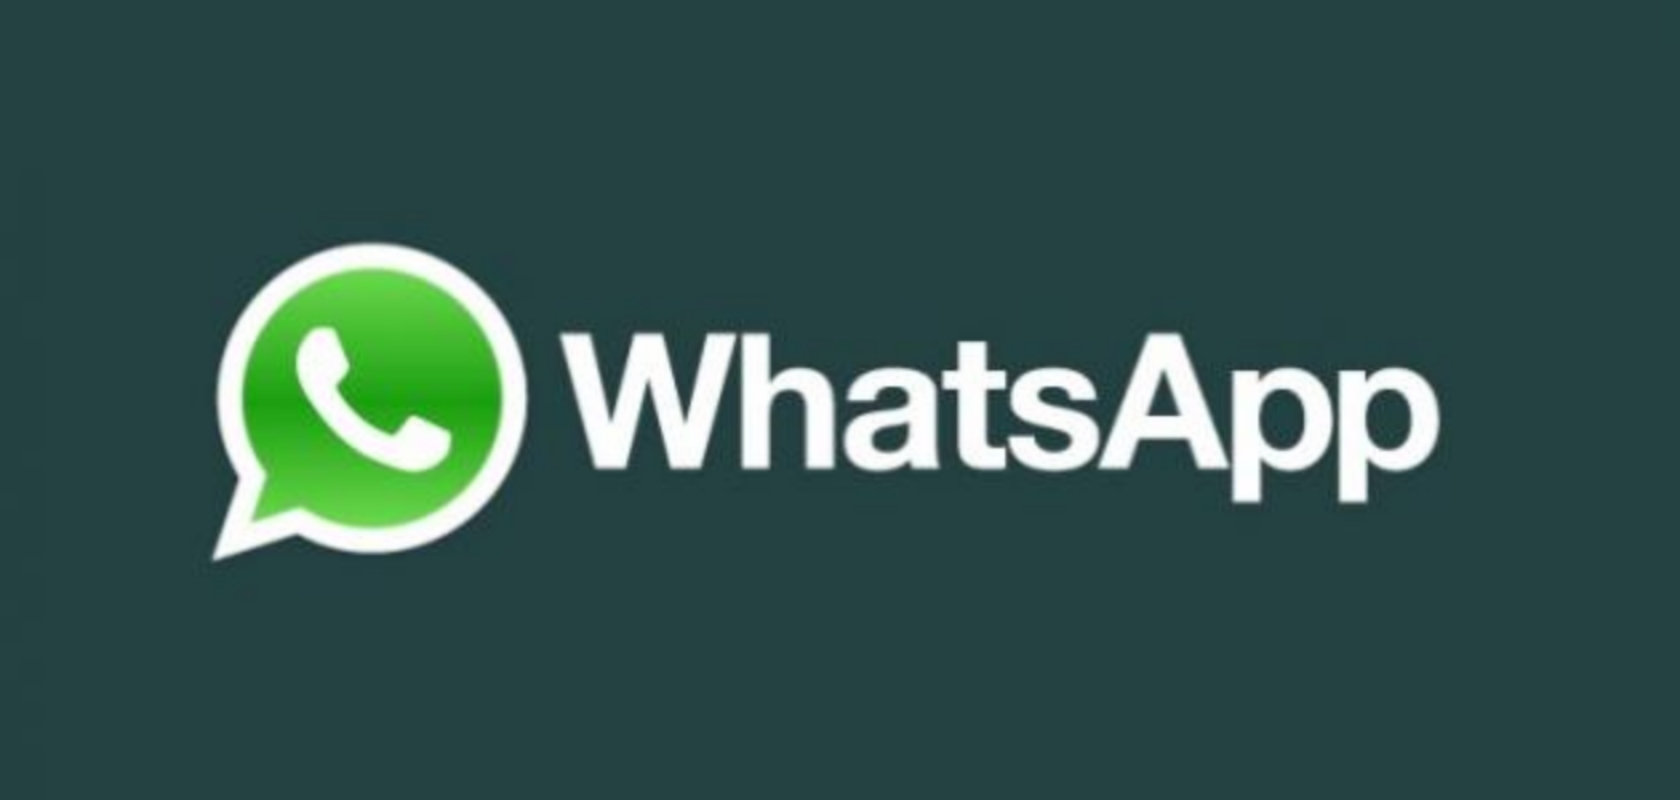 كيفية منع الأعضاء من إرسال الرسائل في مجموعة واتساب WhatsApp